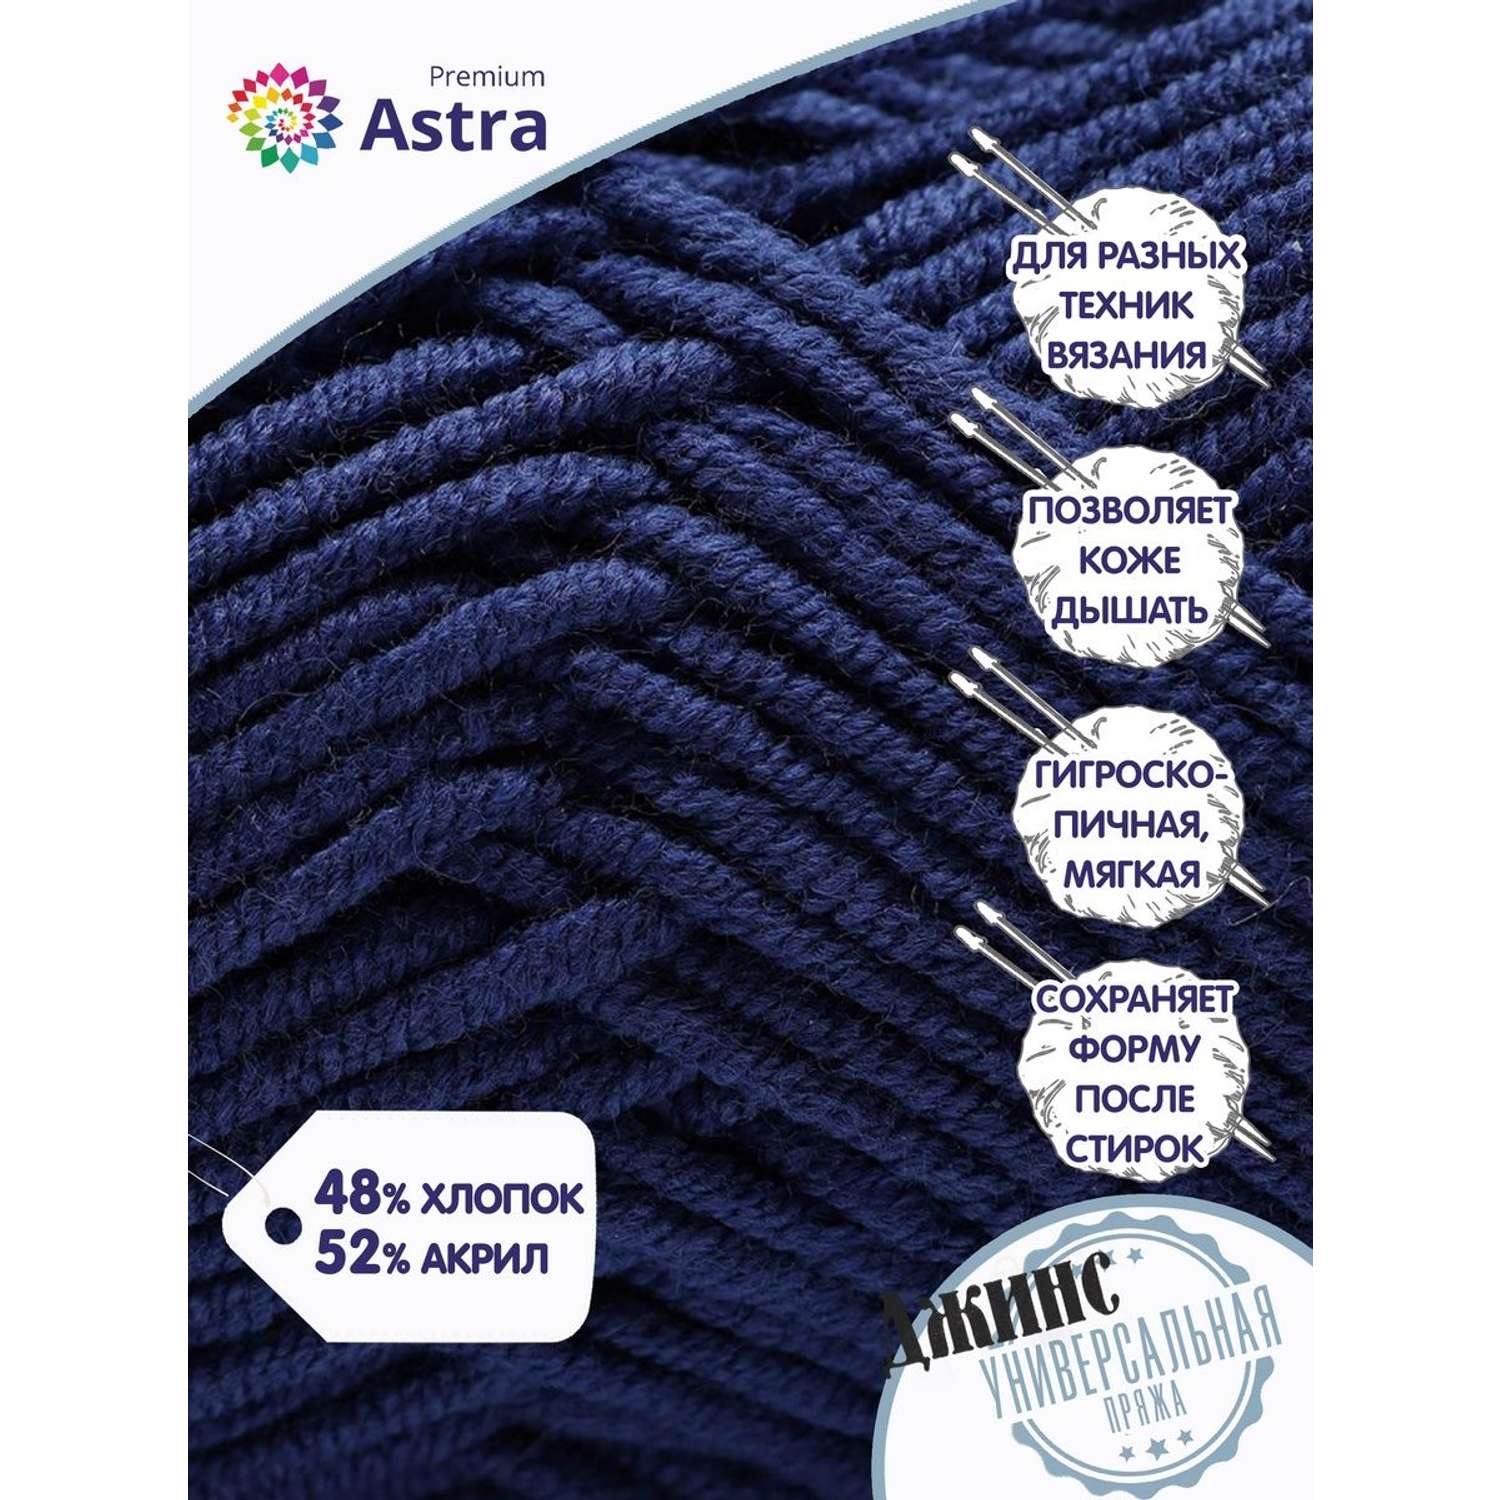 Пряжа для вязания Astra Premium джинс для повседневной одежды акрил хлопок 50 гр 135 м 685 индиго 4 мотка - фото 7